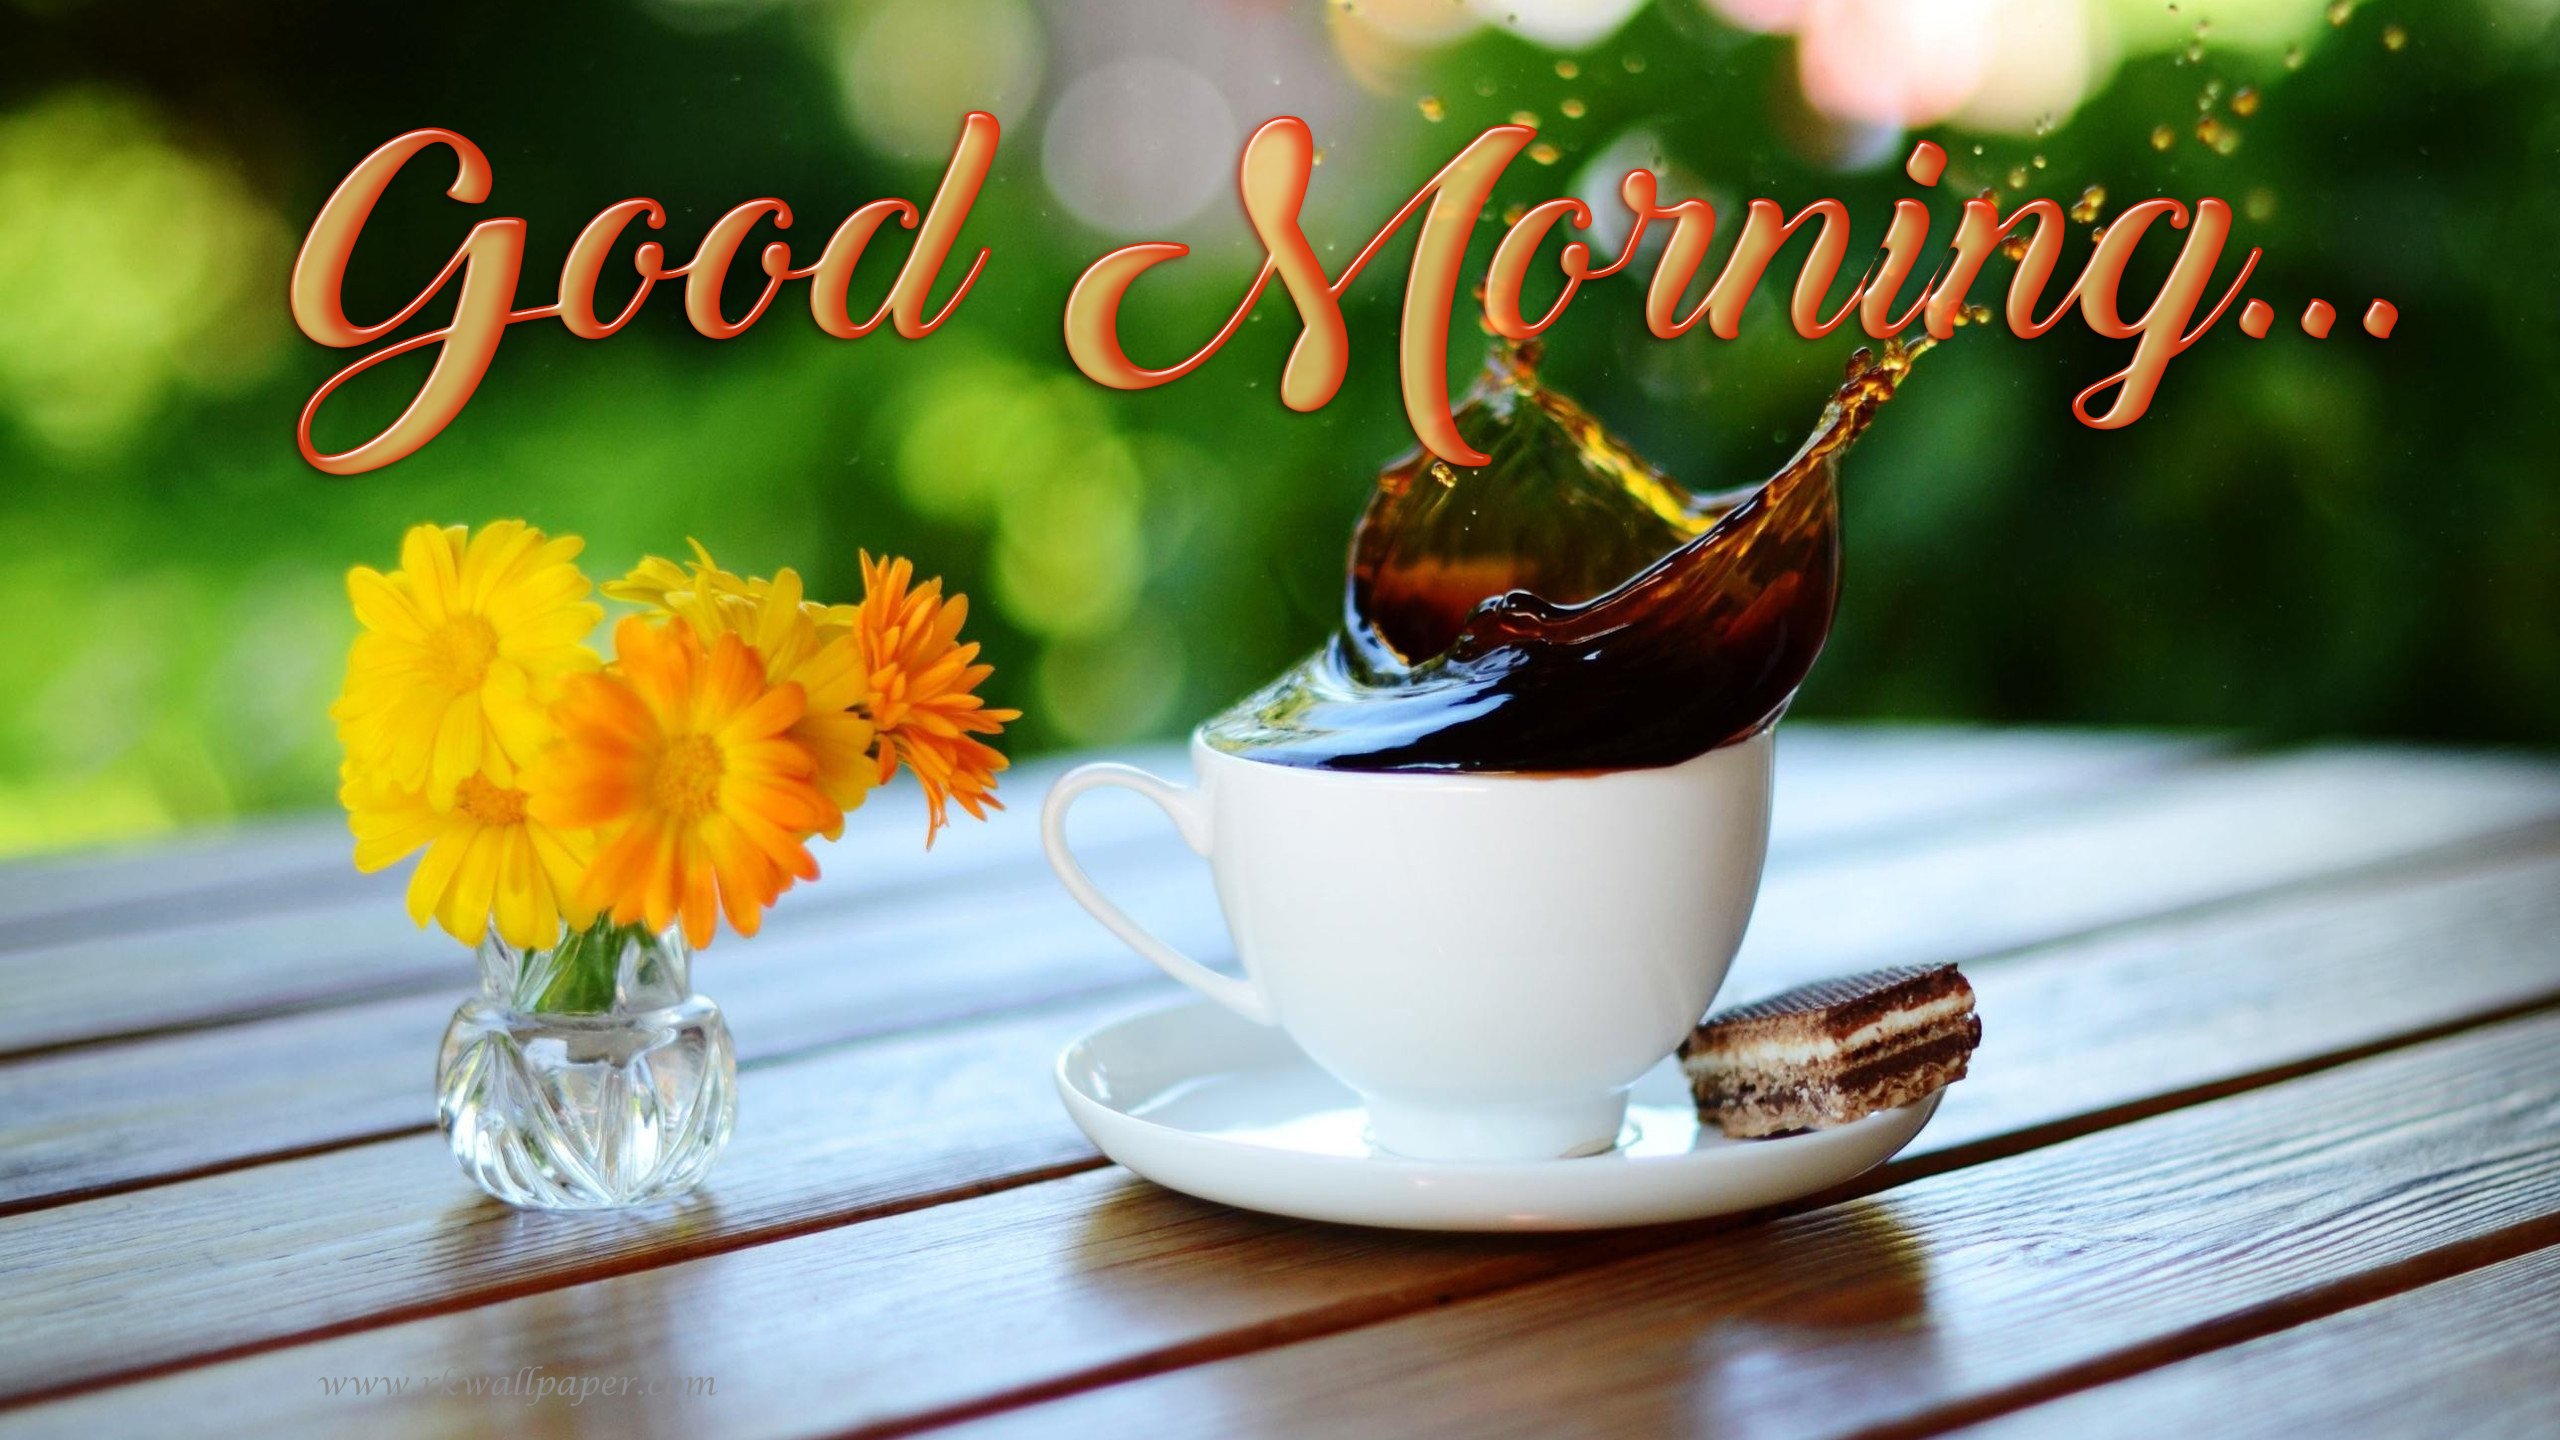 Доброе утро добрый день английском. С добрым утром картинки красивые. Открытки с добрым утром на английском языке. Красивое утро. Открытка с добрым утра наманглийском языке.